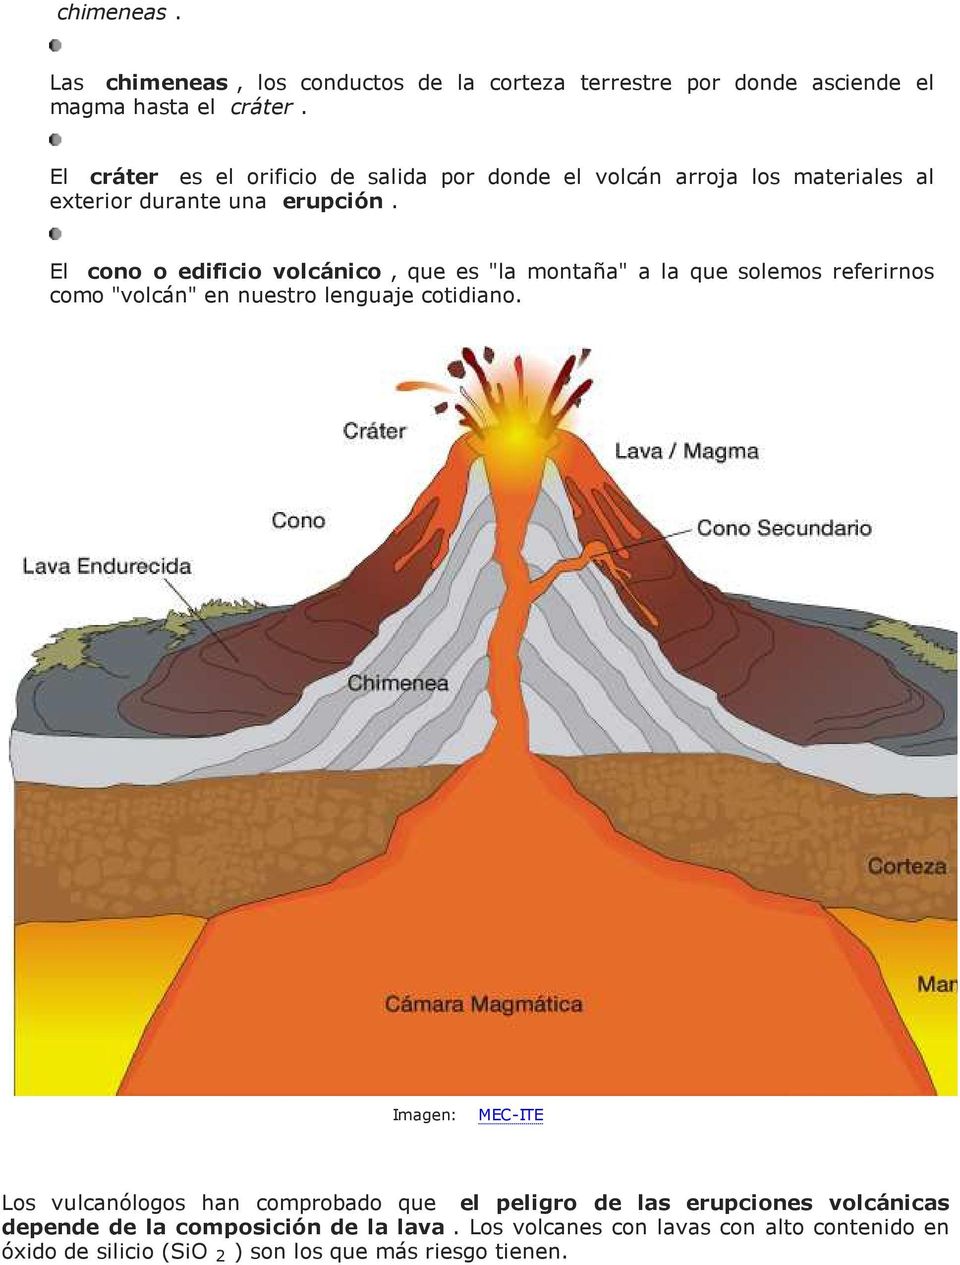 El cono o edificio volcánico, que es "la montaña" a la que solemos referirnos como "volcán" en nuestro lenguaje cotidiano.